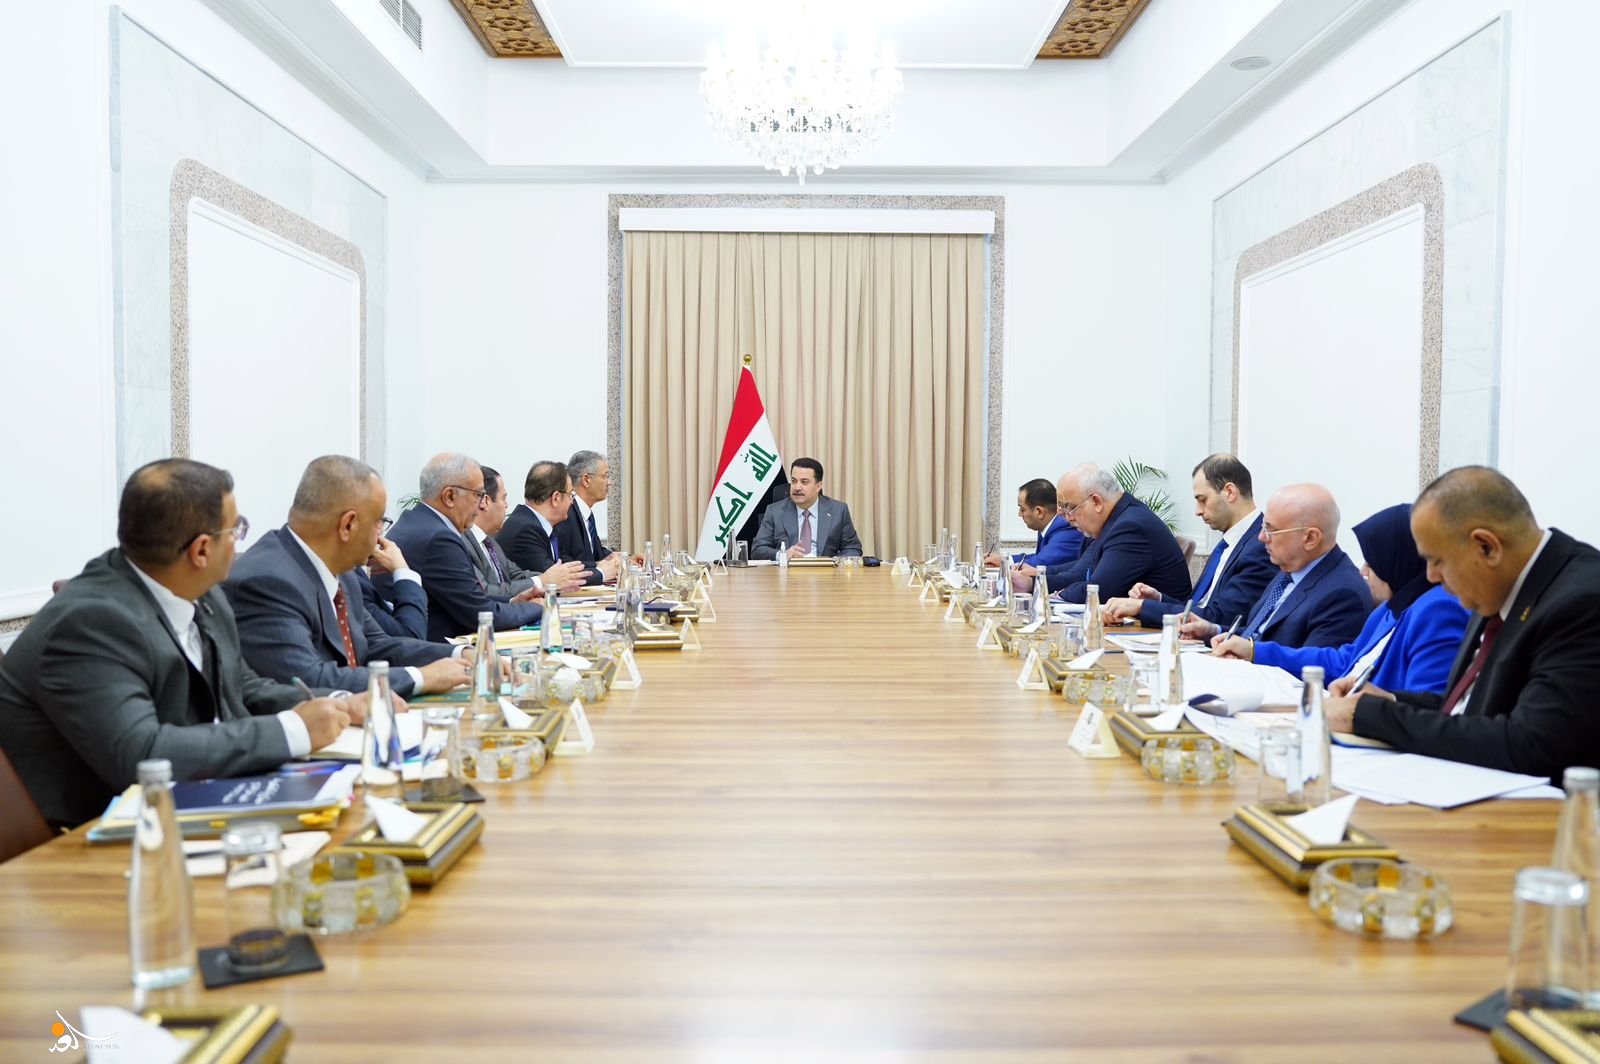 السوداني يترأس اجتماعاً عن خطط الكهرباء ويوجّه بتحديث الستراتيجية الوطنية للطاقة